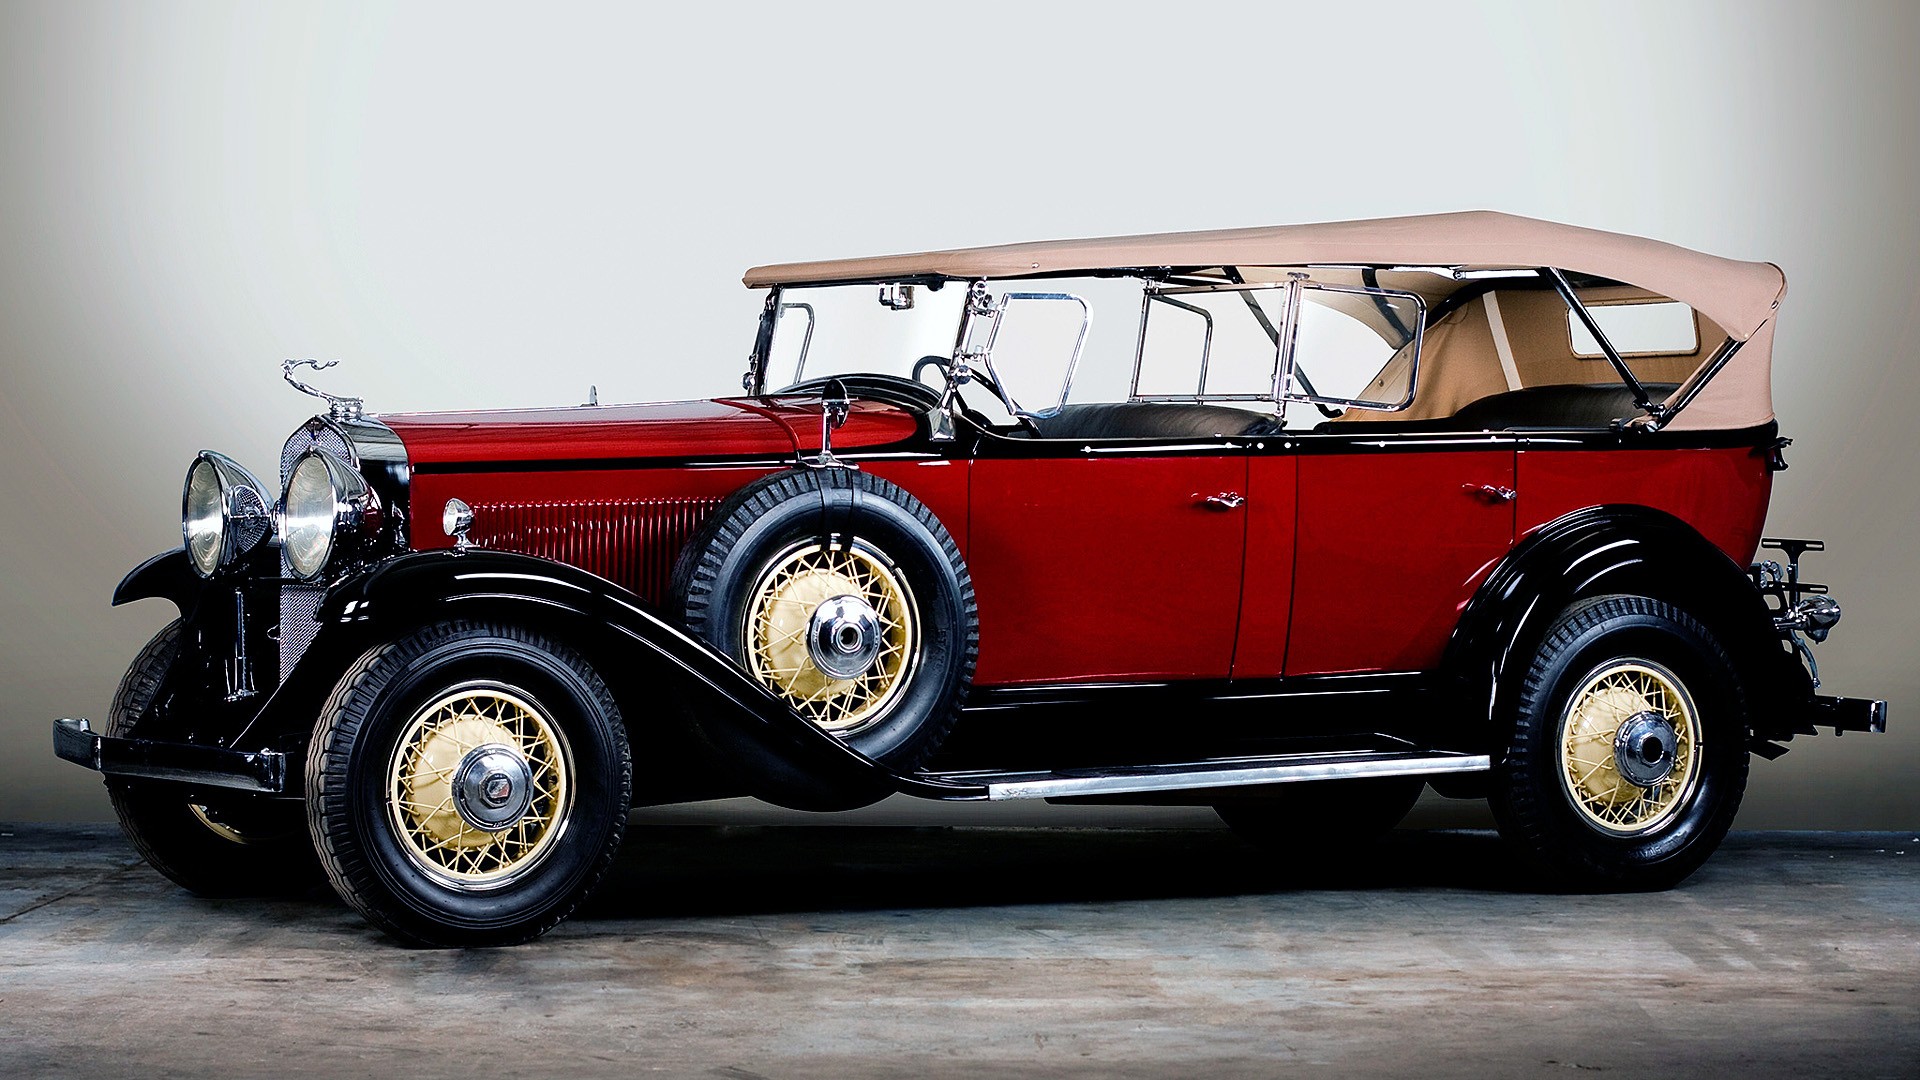 classic desktop wallpaper,land vehicle,vehicle,car,vintage car,antique car